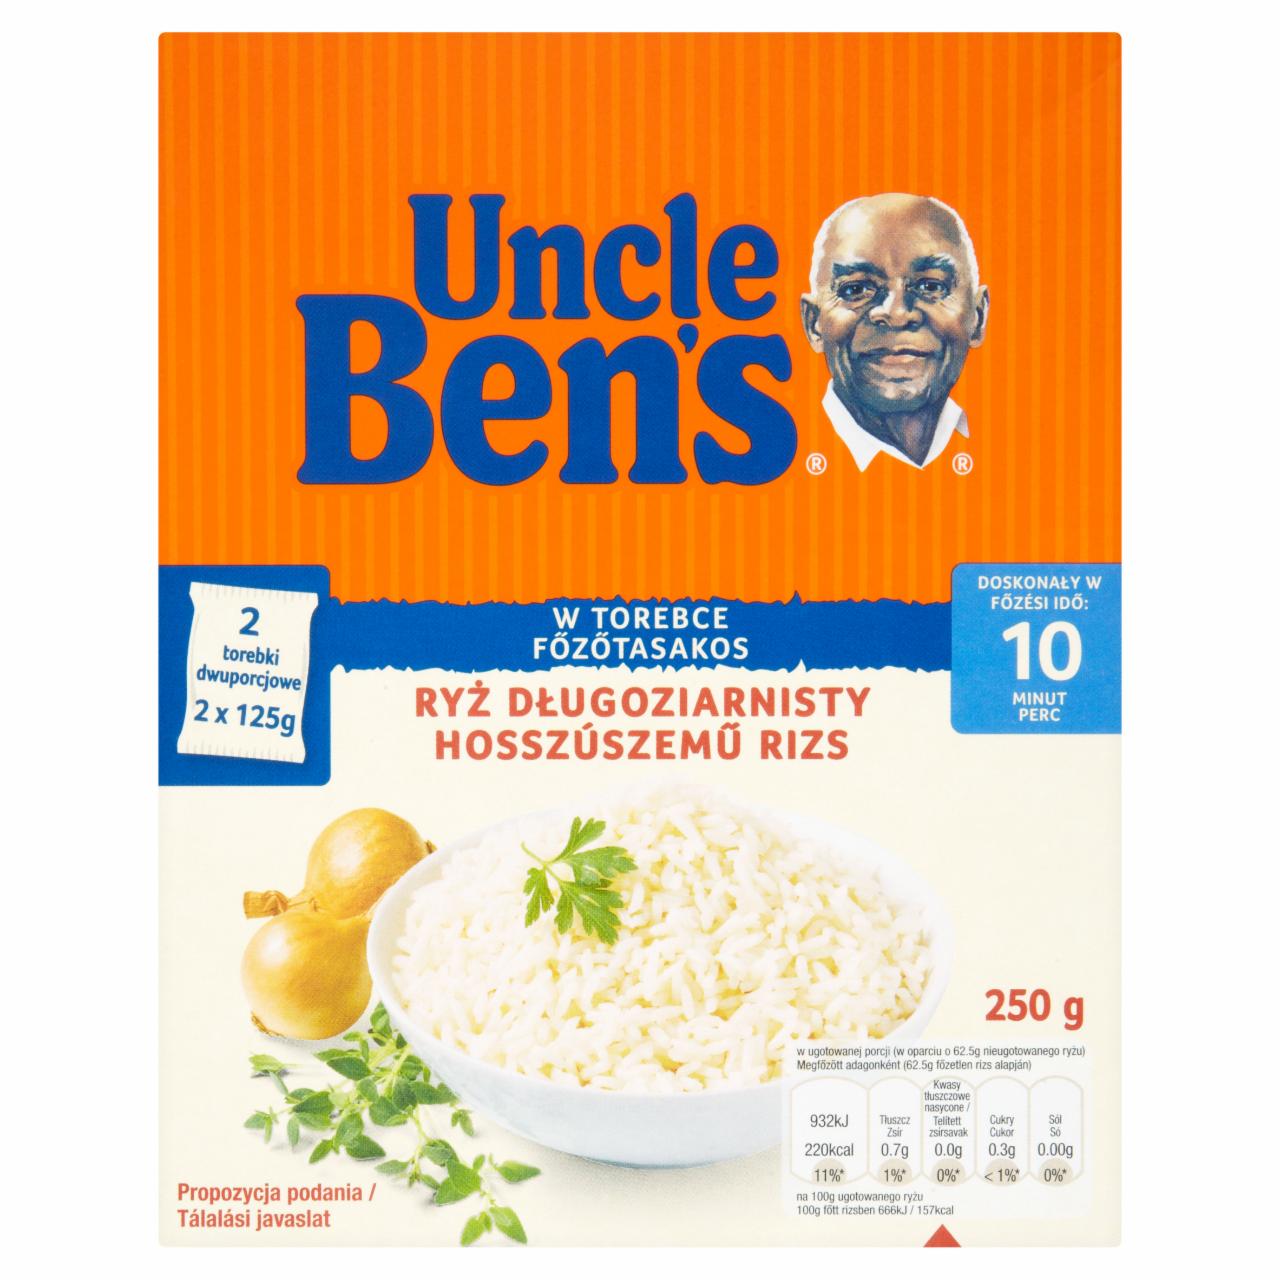 Képek - Uncle Ben's főzőtasakos hosszúszemű rizs 250 g